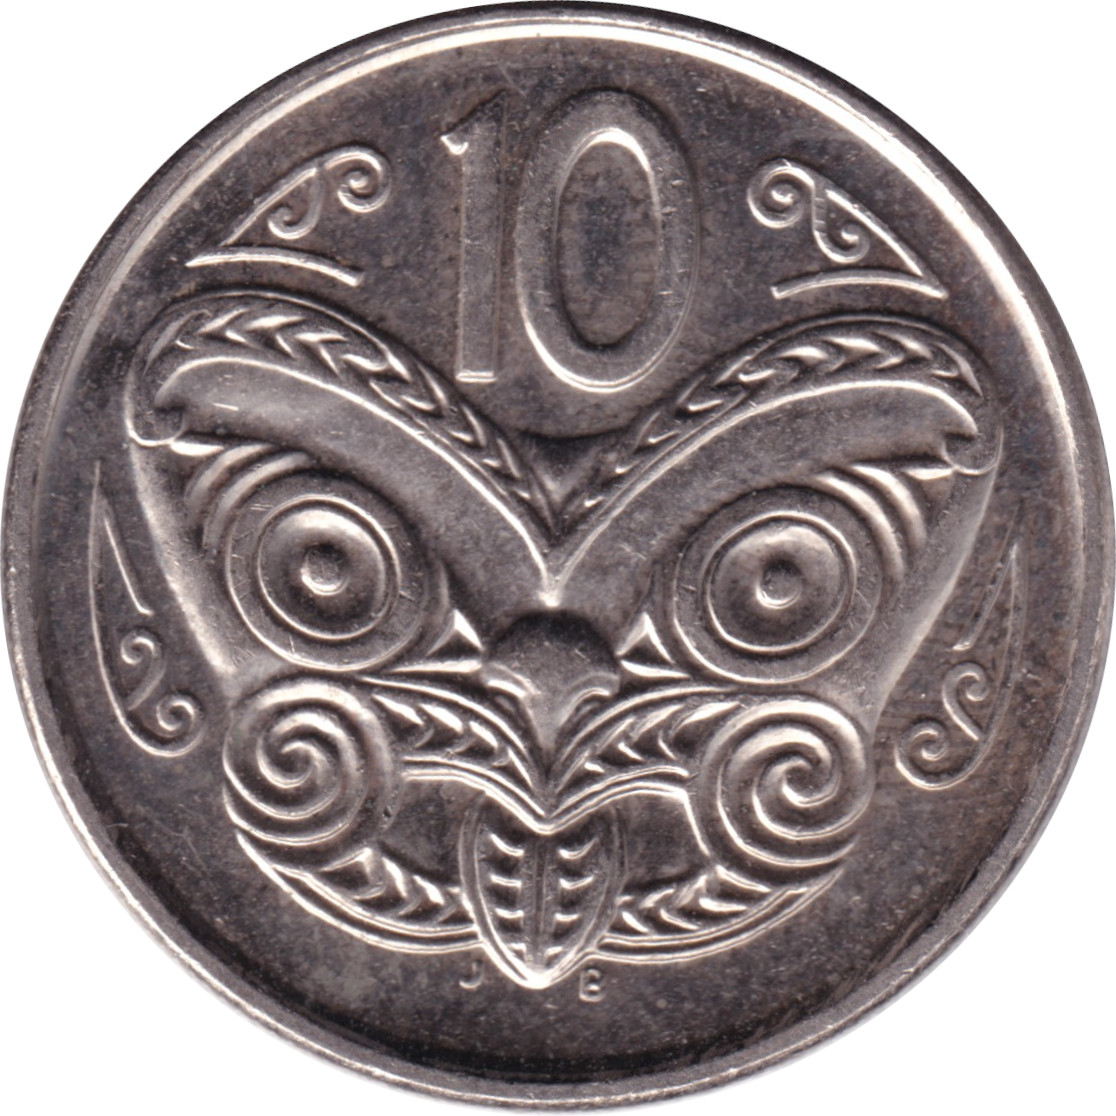 10 cents - Elizabeth II - Tête agée - Type 1